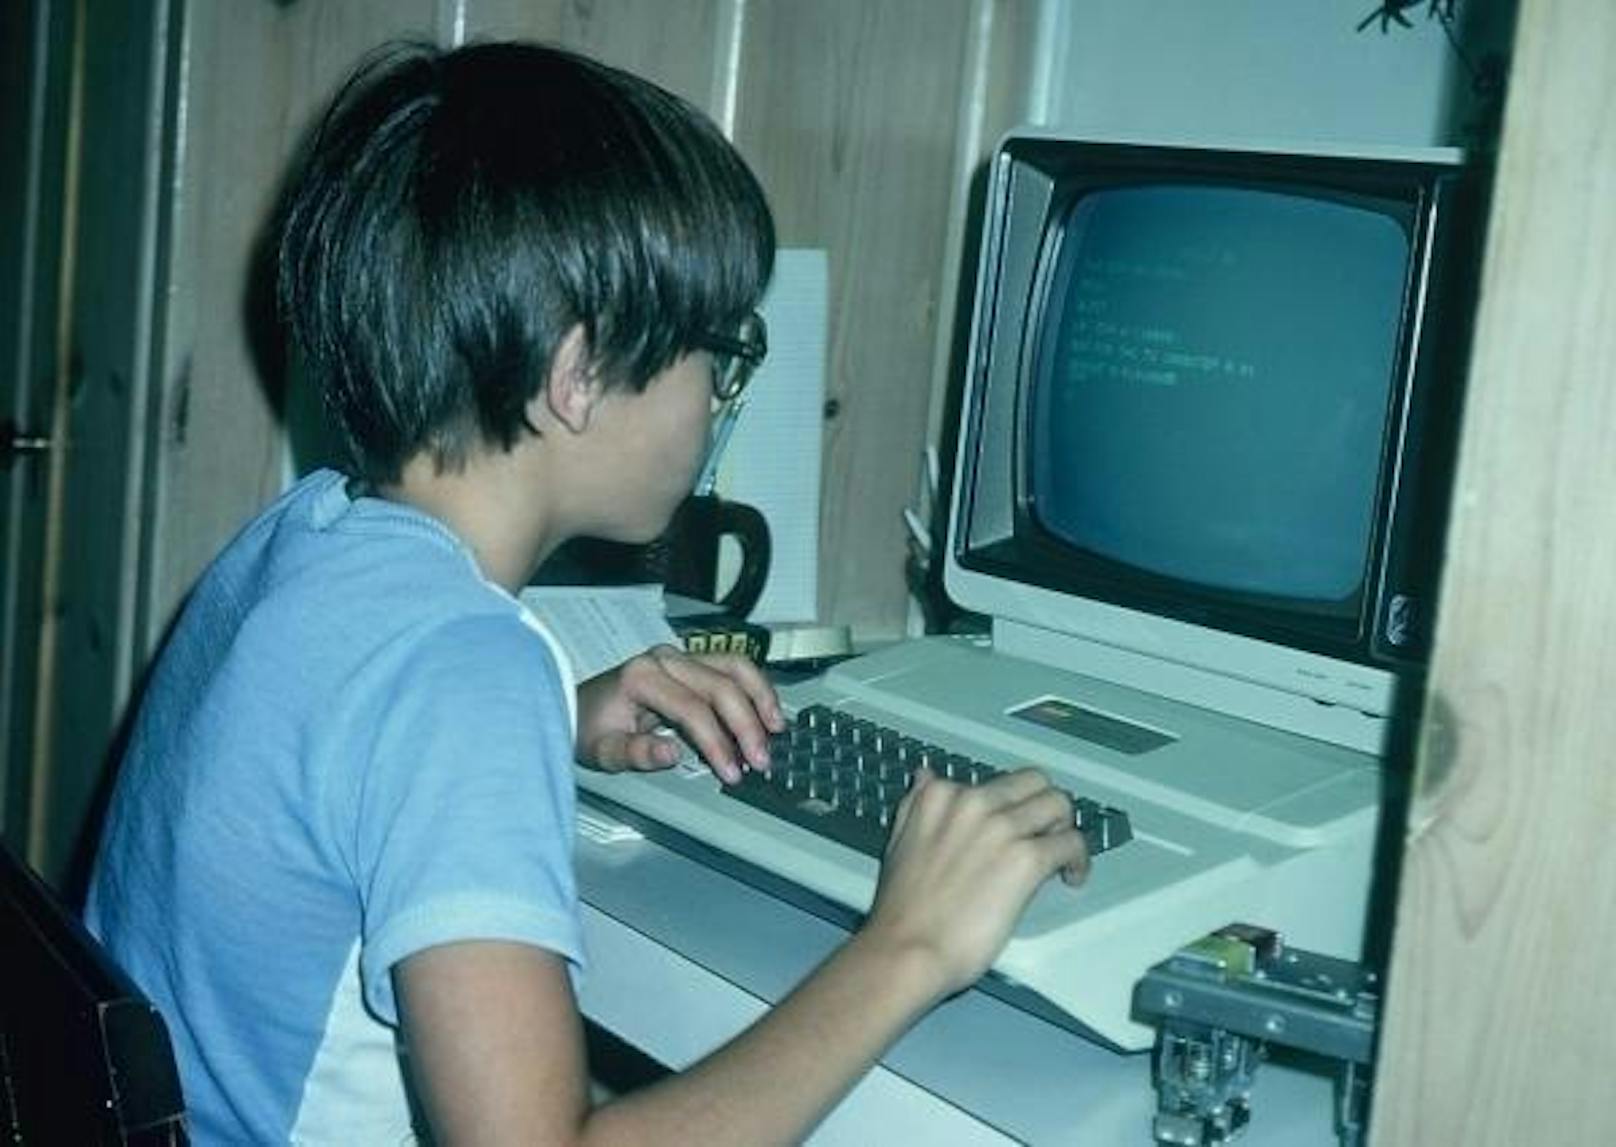 <b>Datum unbekannt:</b> Tim Sweeney interessierte sich schon früh für Computer. Als 11-Jähriger besuchte er das Start-up seines Bruders und lernte dort auf einem IBM-PC die Programmiersprache Basic - innerhalb von drei Wochen. Sein Interesse fürs Coden führte er später auf dem Apple II seiner Eltern weiter. Laut eigener Aussage hatte er als 15-Jähriger schon 10.000 Stunden ins Programmieren gesteckt.